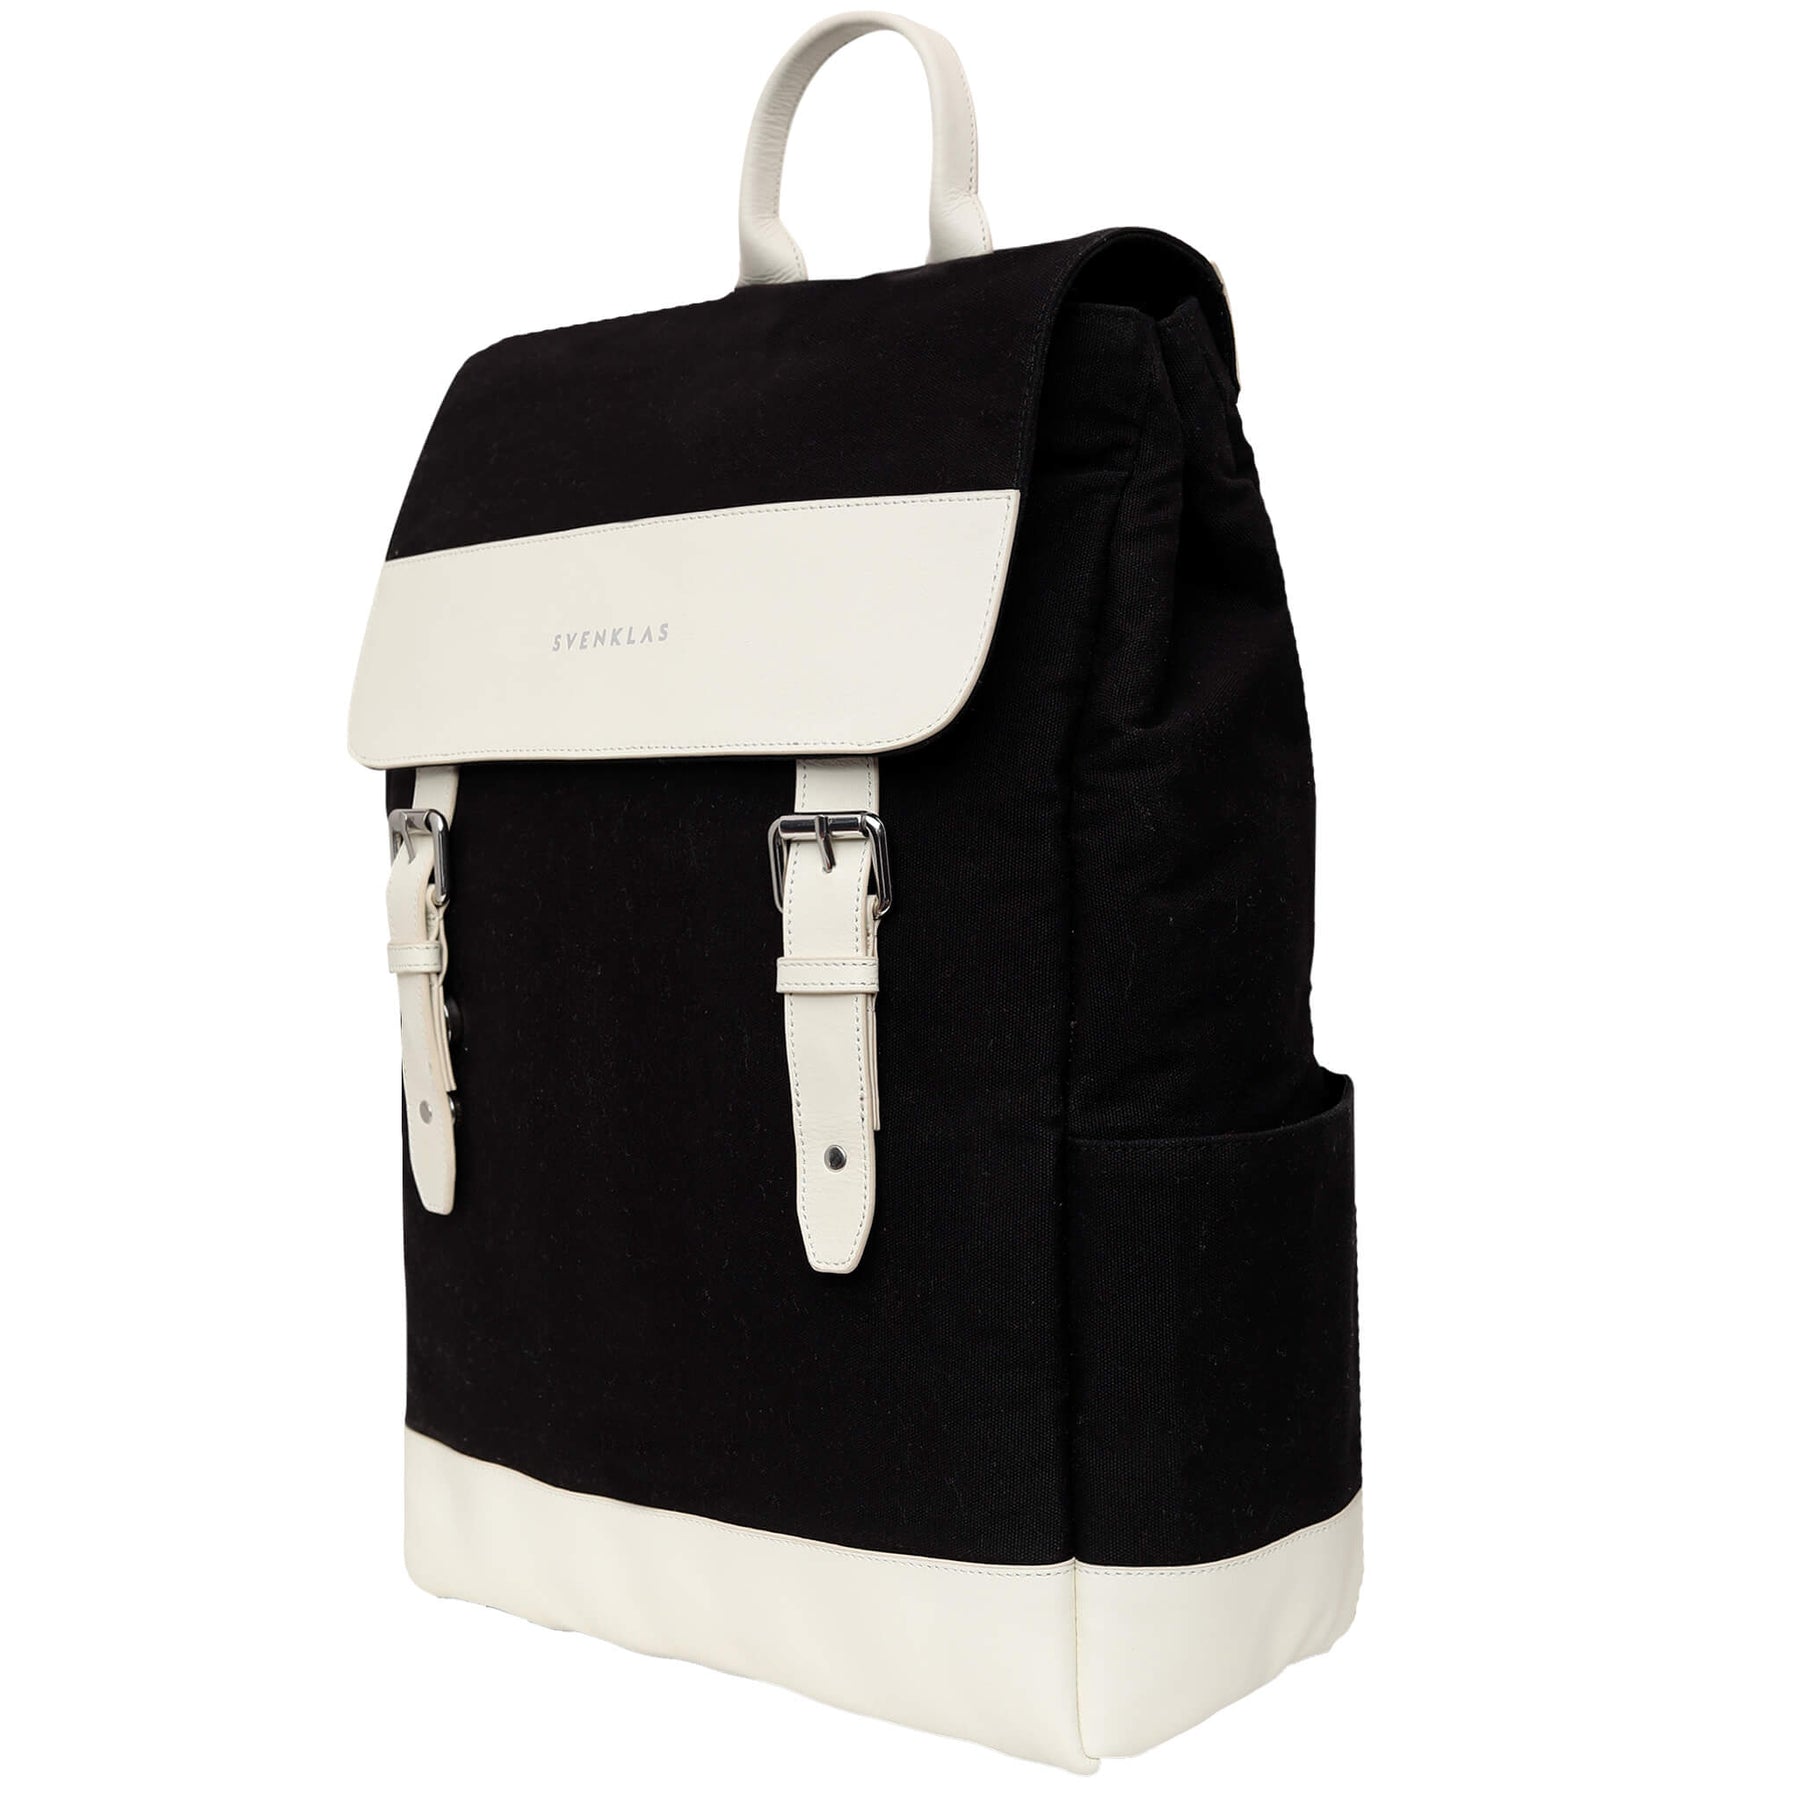 Svenklas amber white black backpack